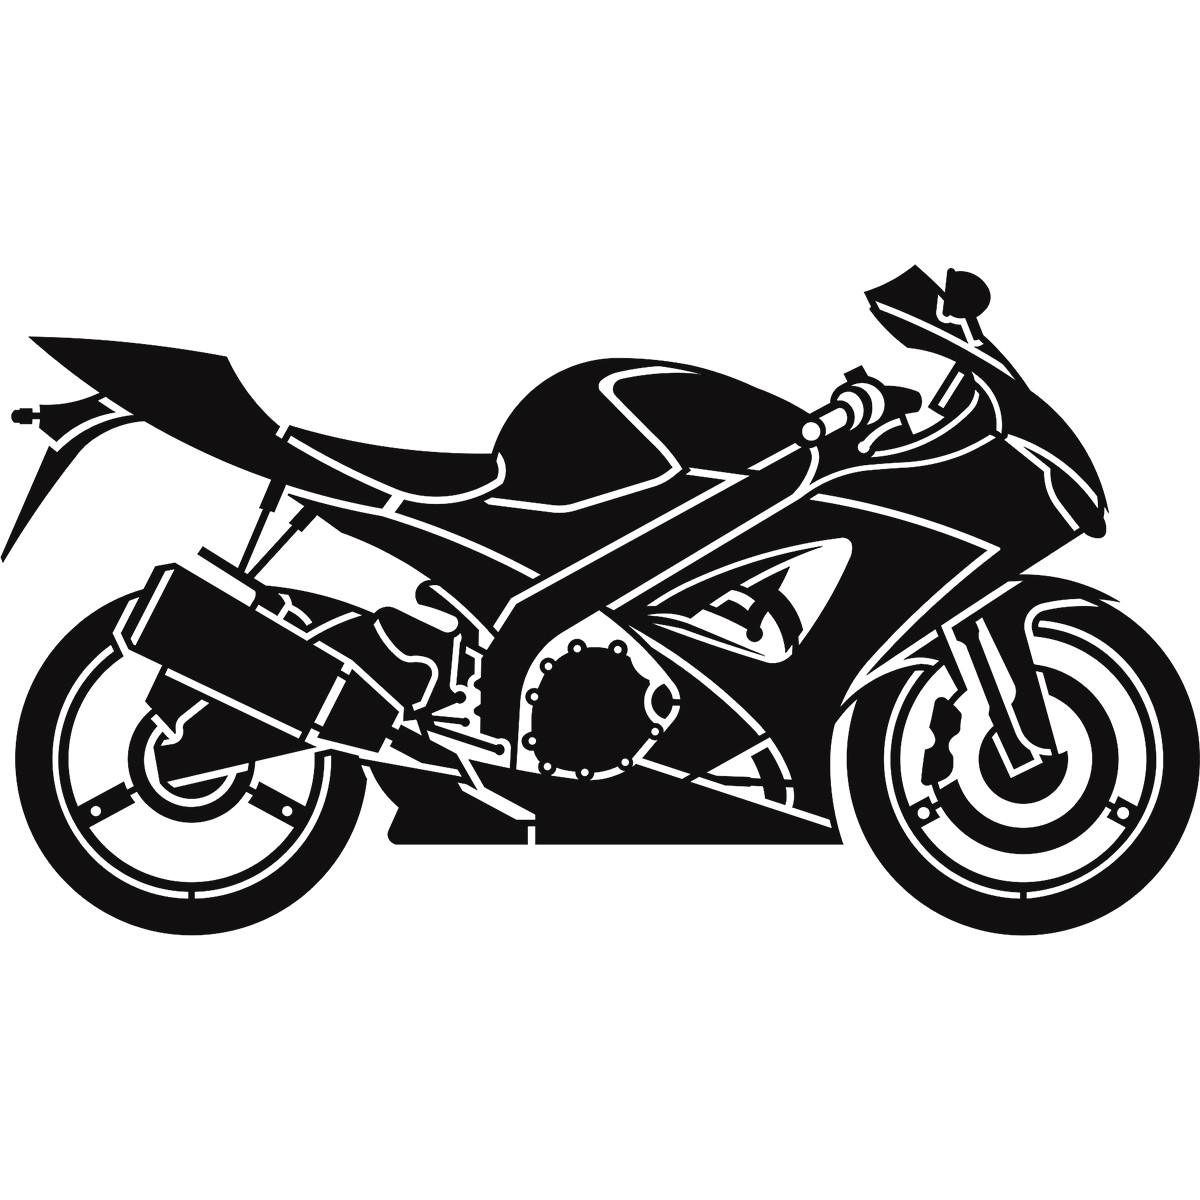 Motorsiklet Hız ve Özgürlük Metal Tablo